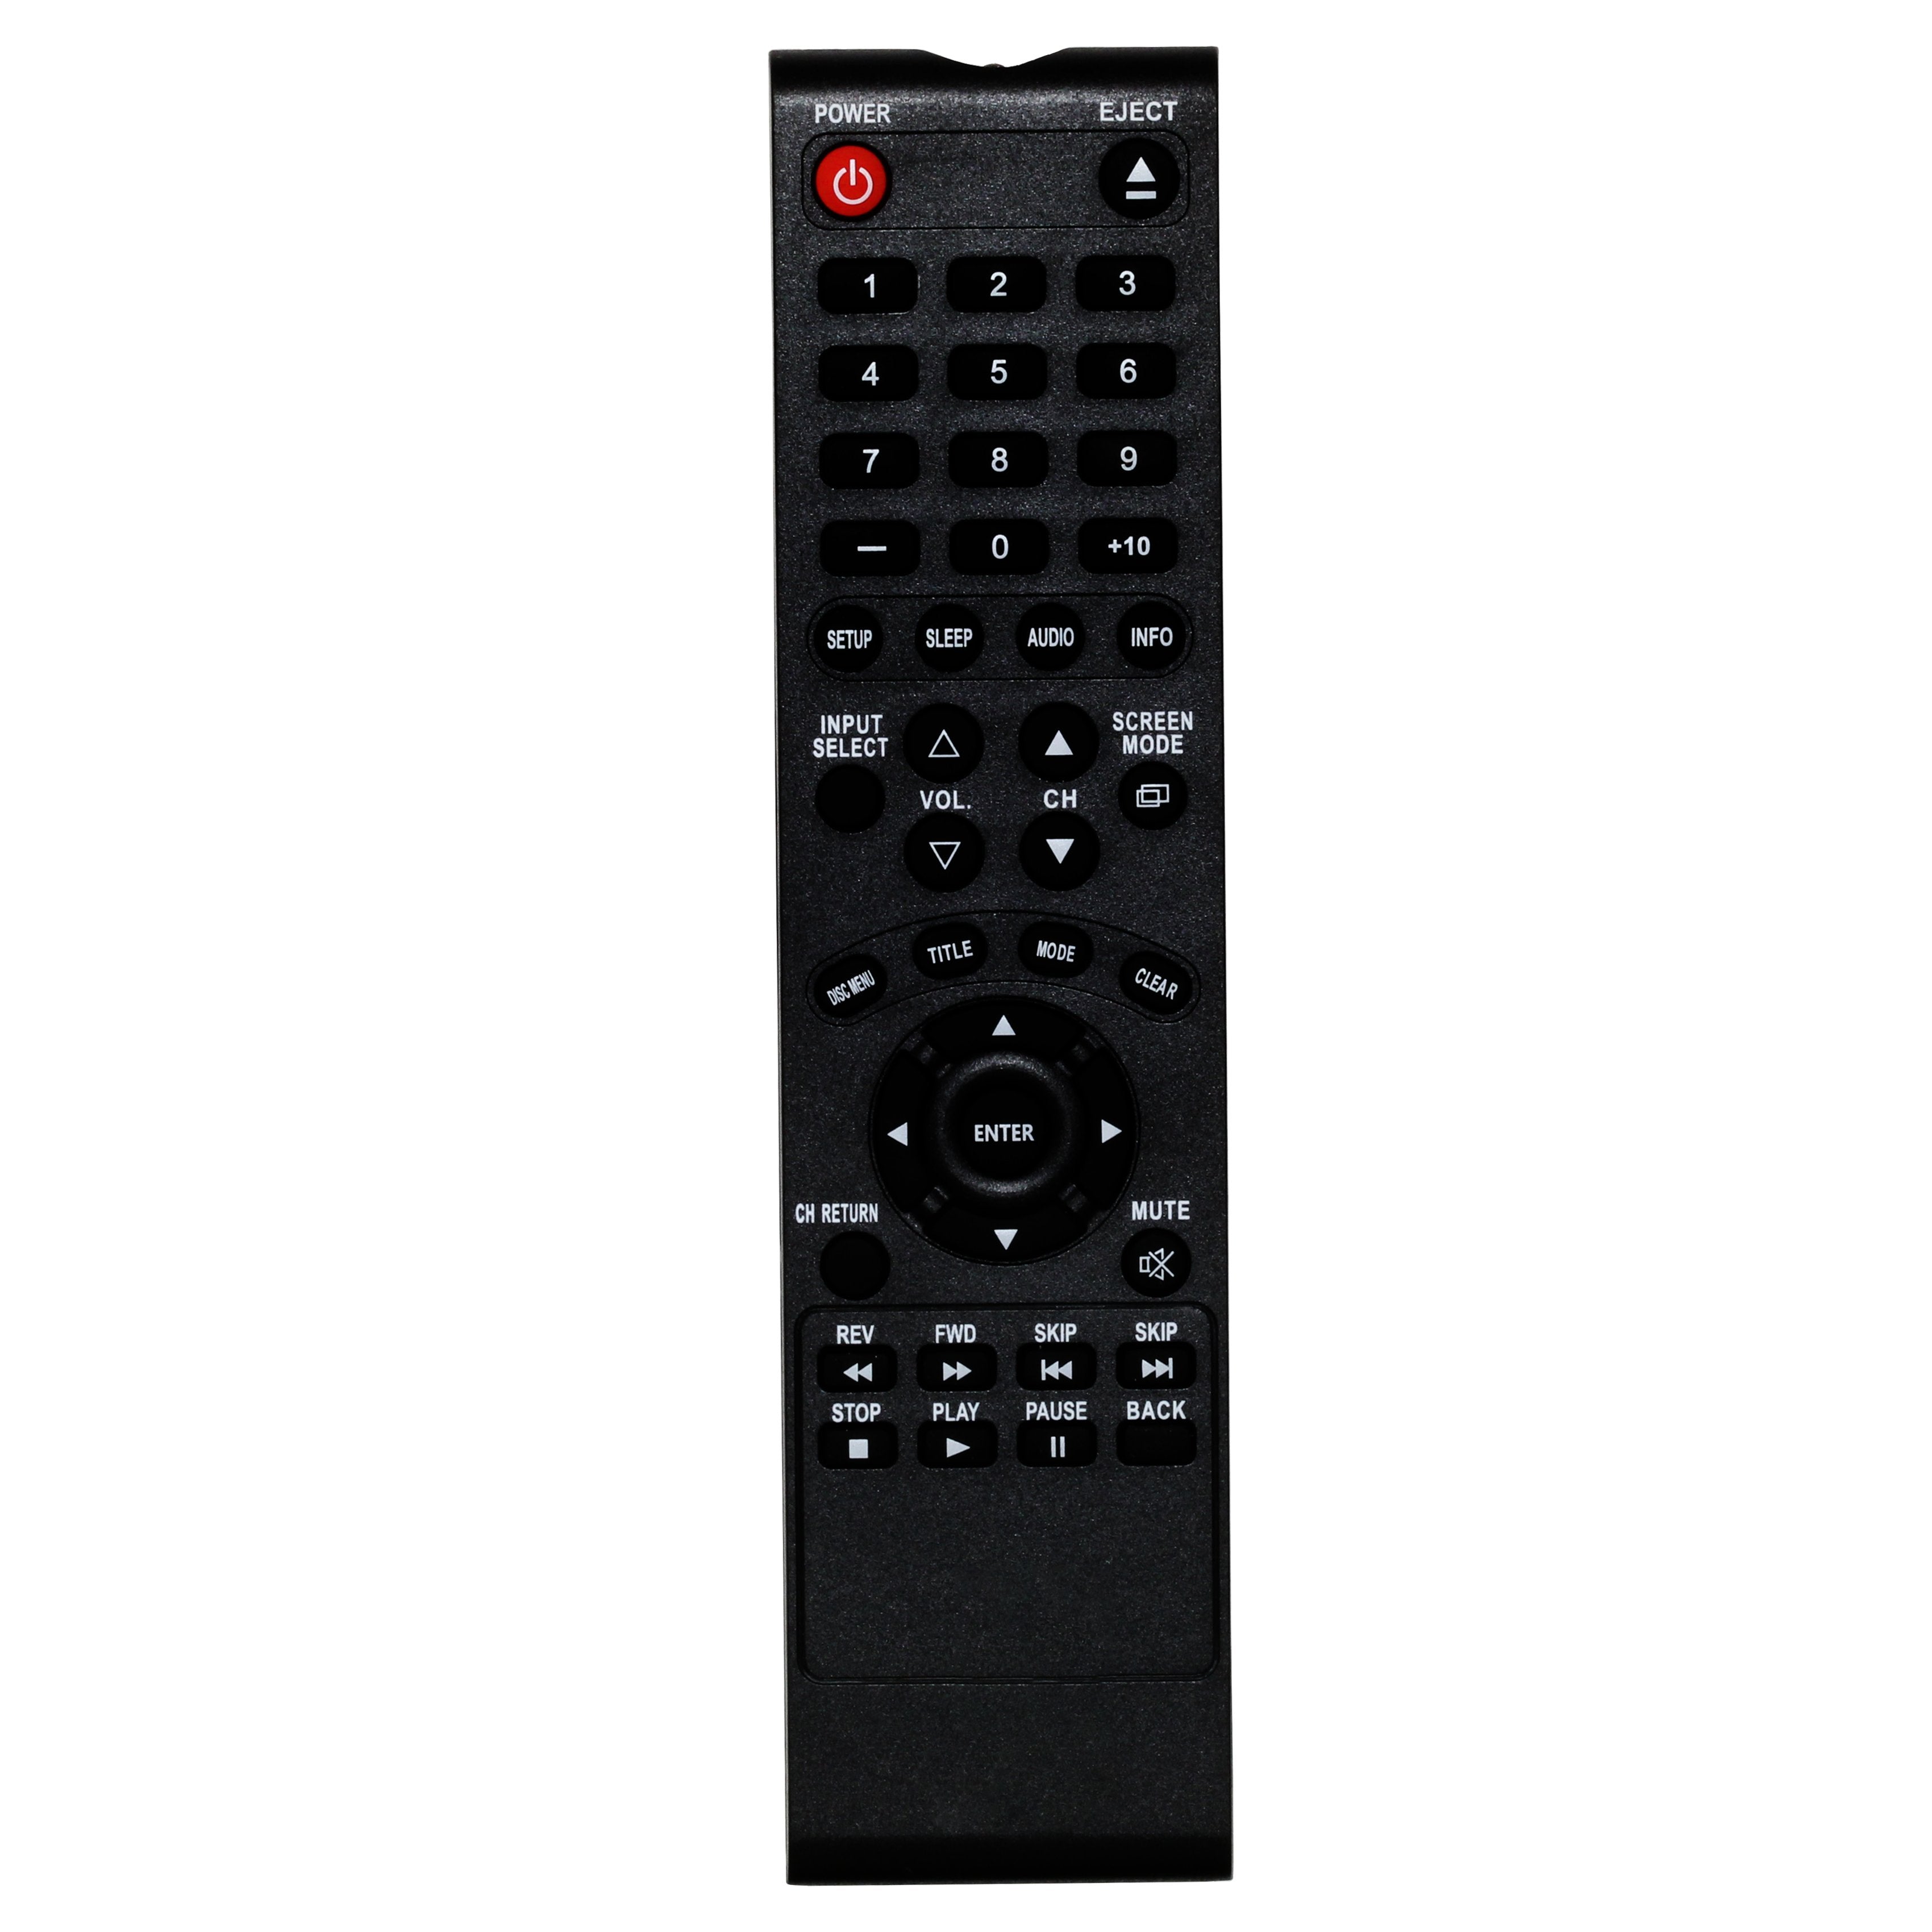 Sylvania RPK933AK02  TV Remote